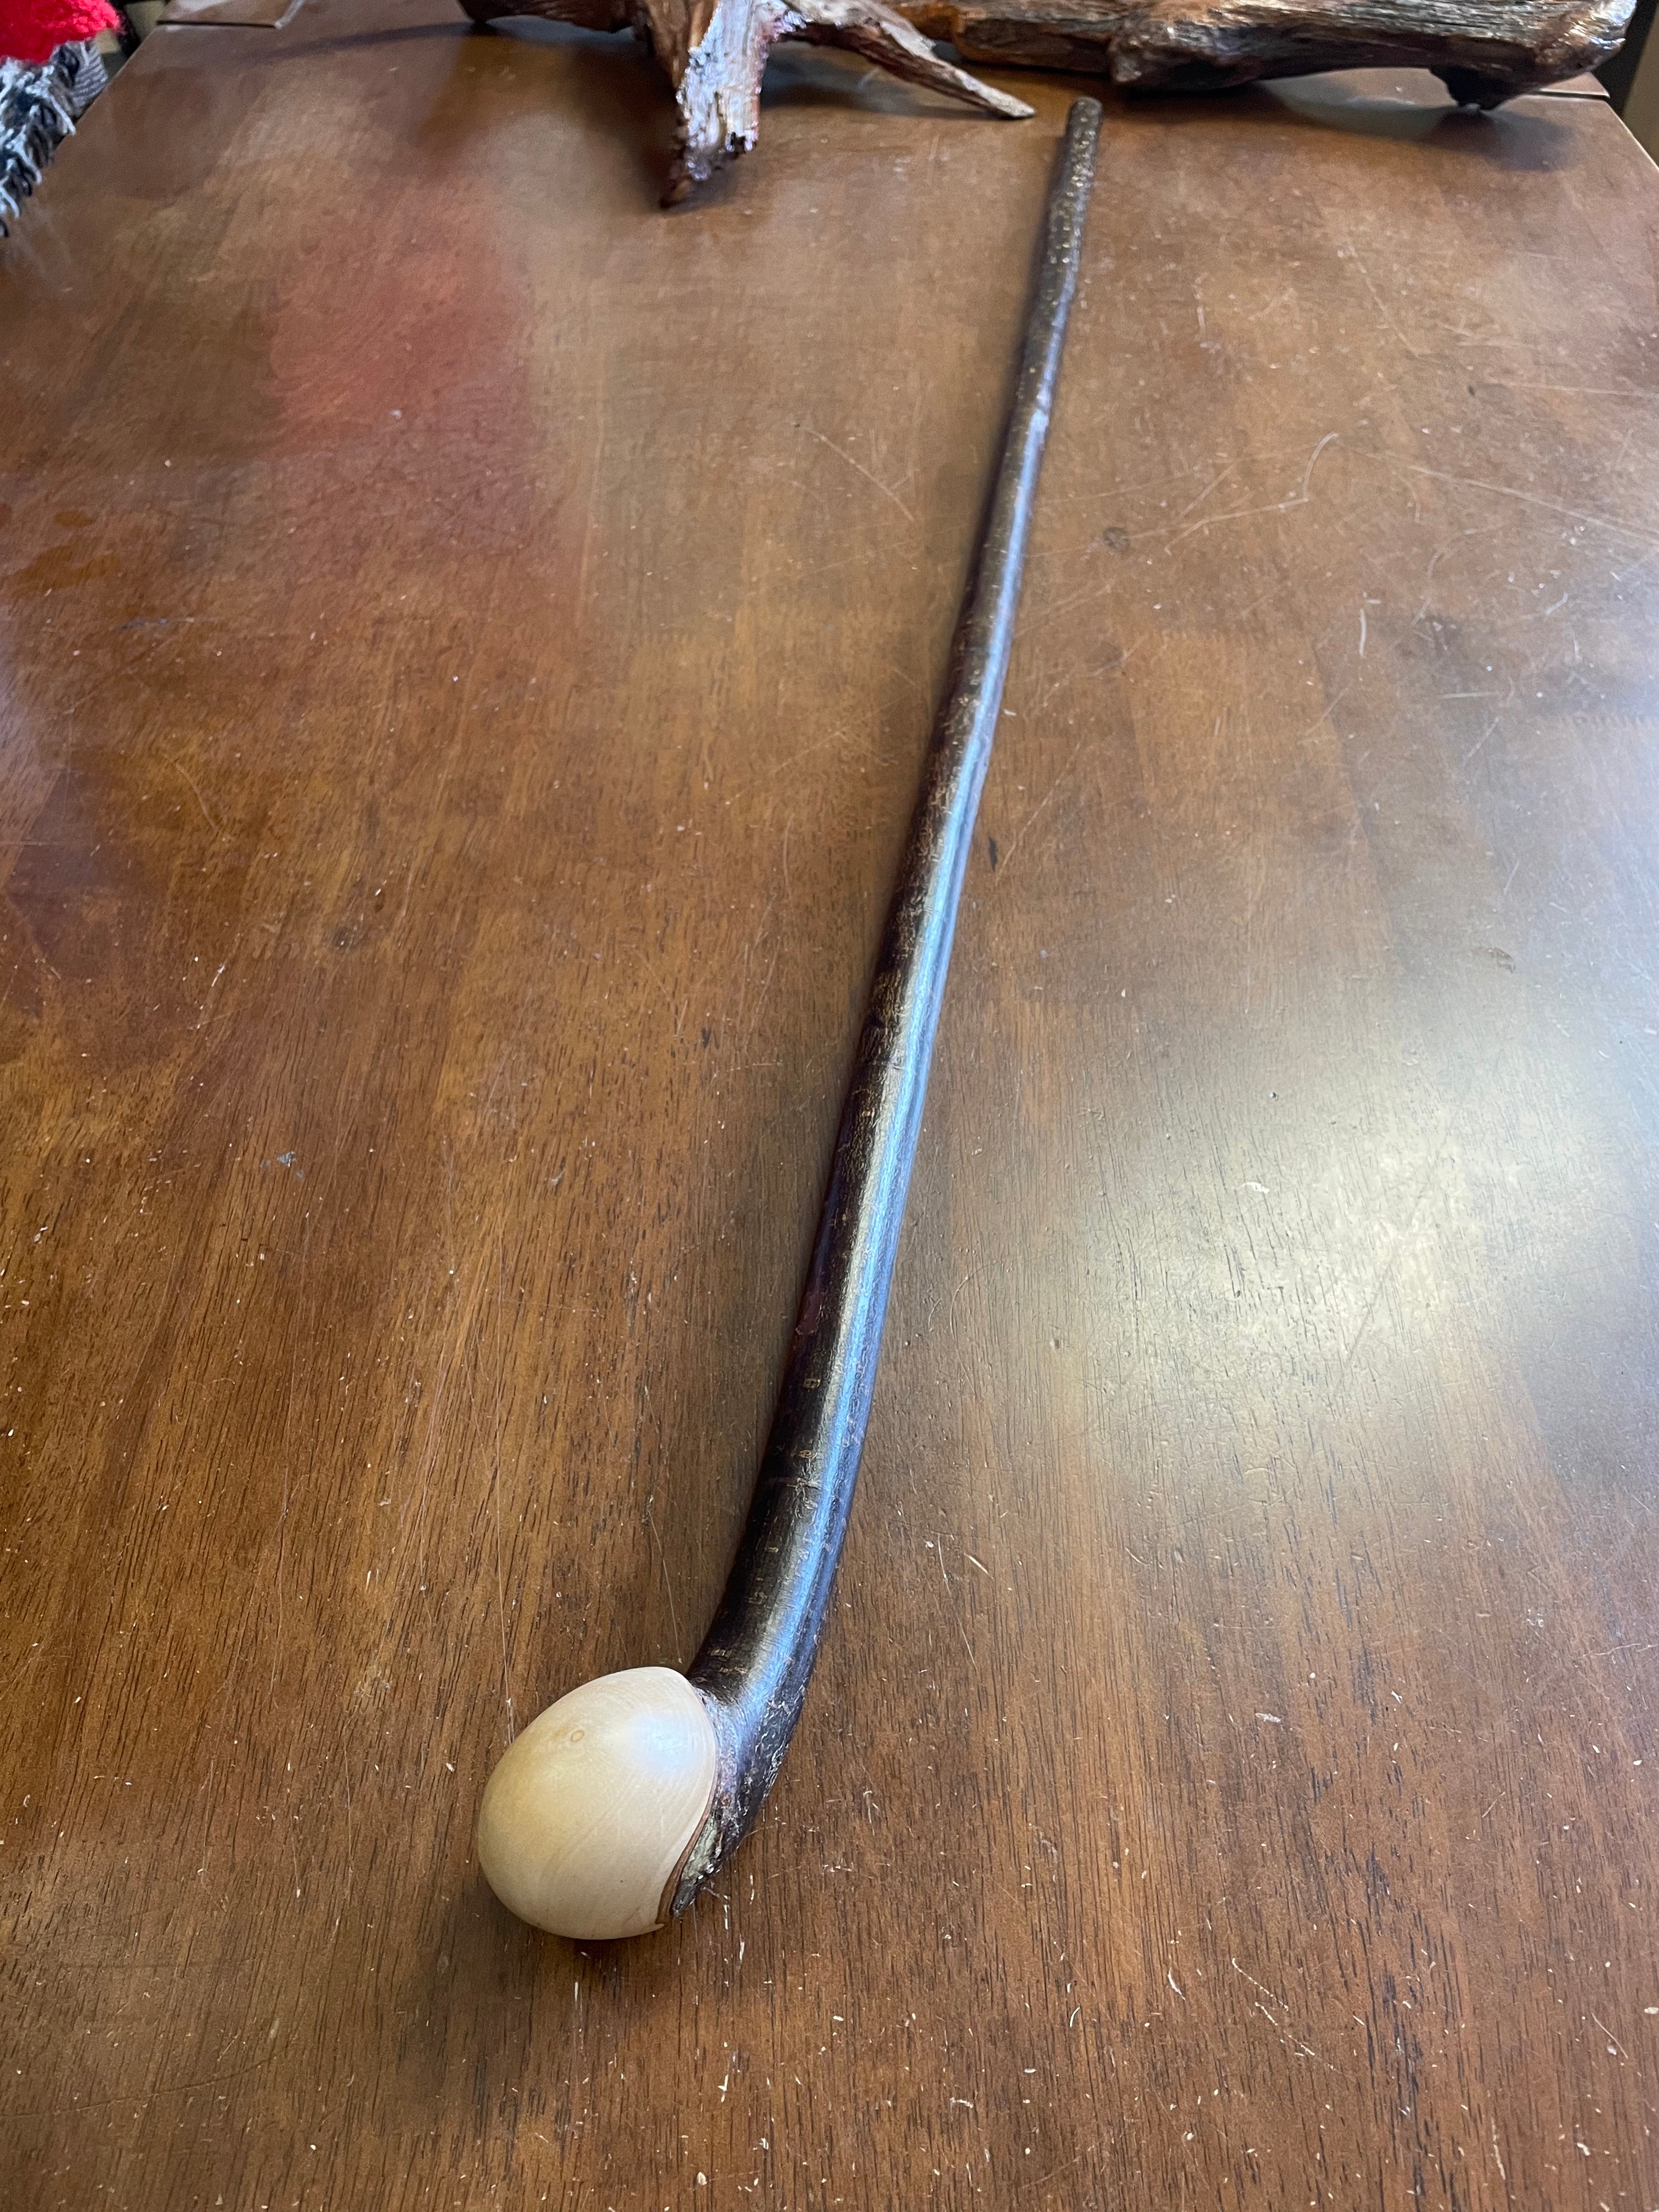 Hazel Walking Stick - 39 1/4 inch